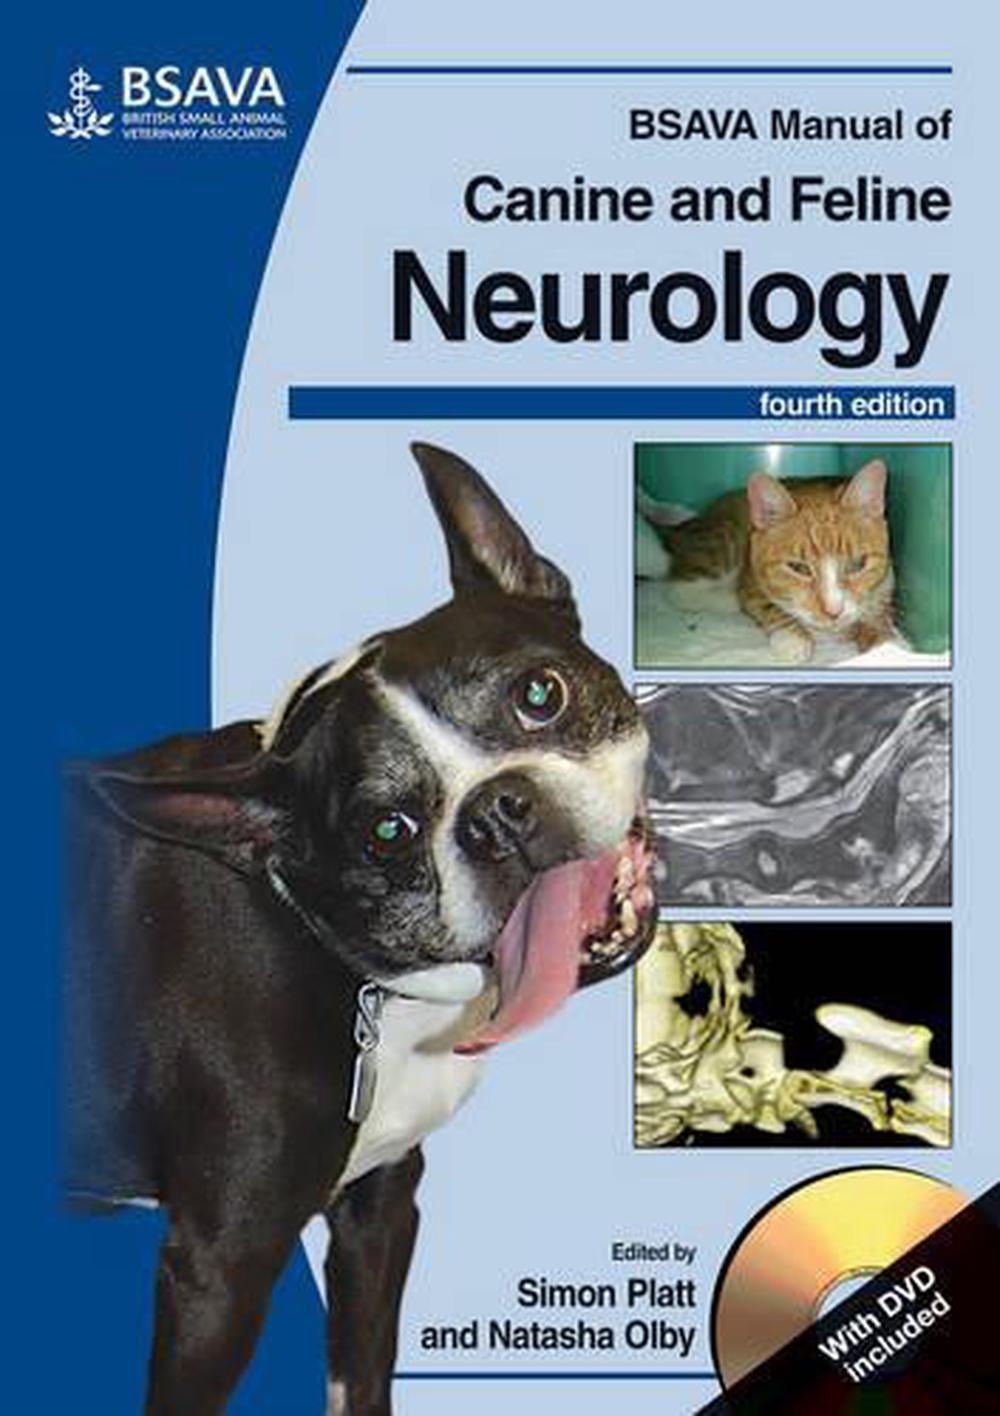 BSAVA Manual of Canine and Feline Neurology by Simon R. Platt